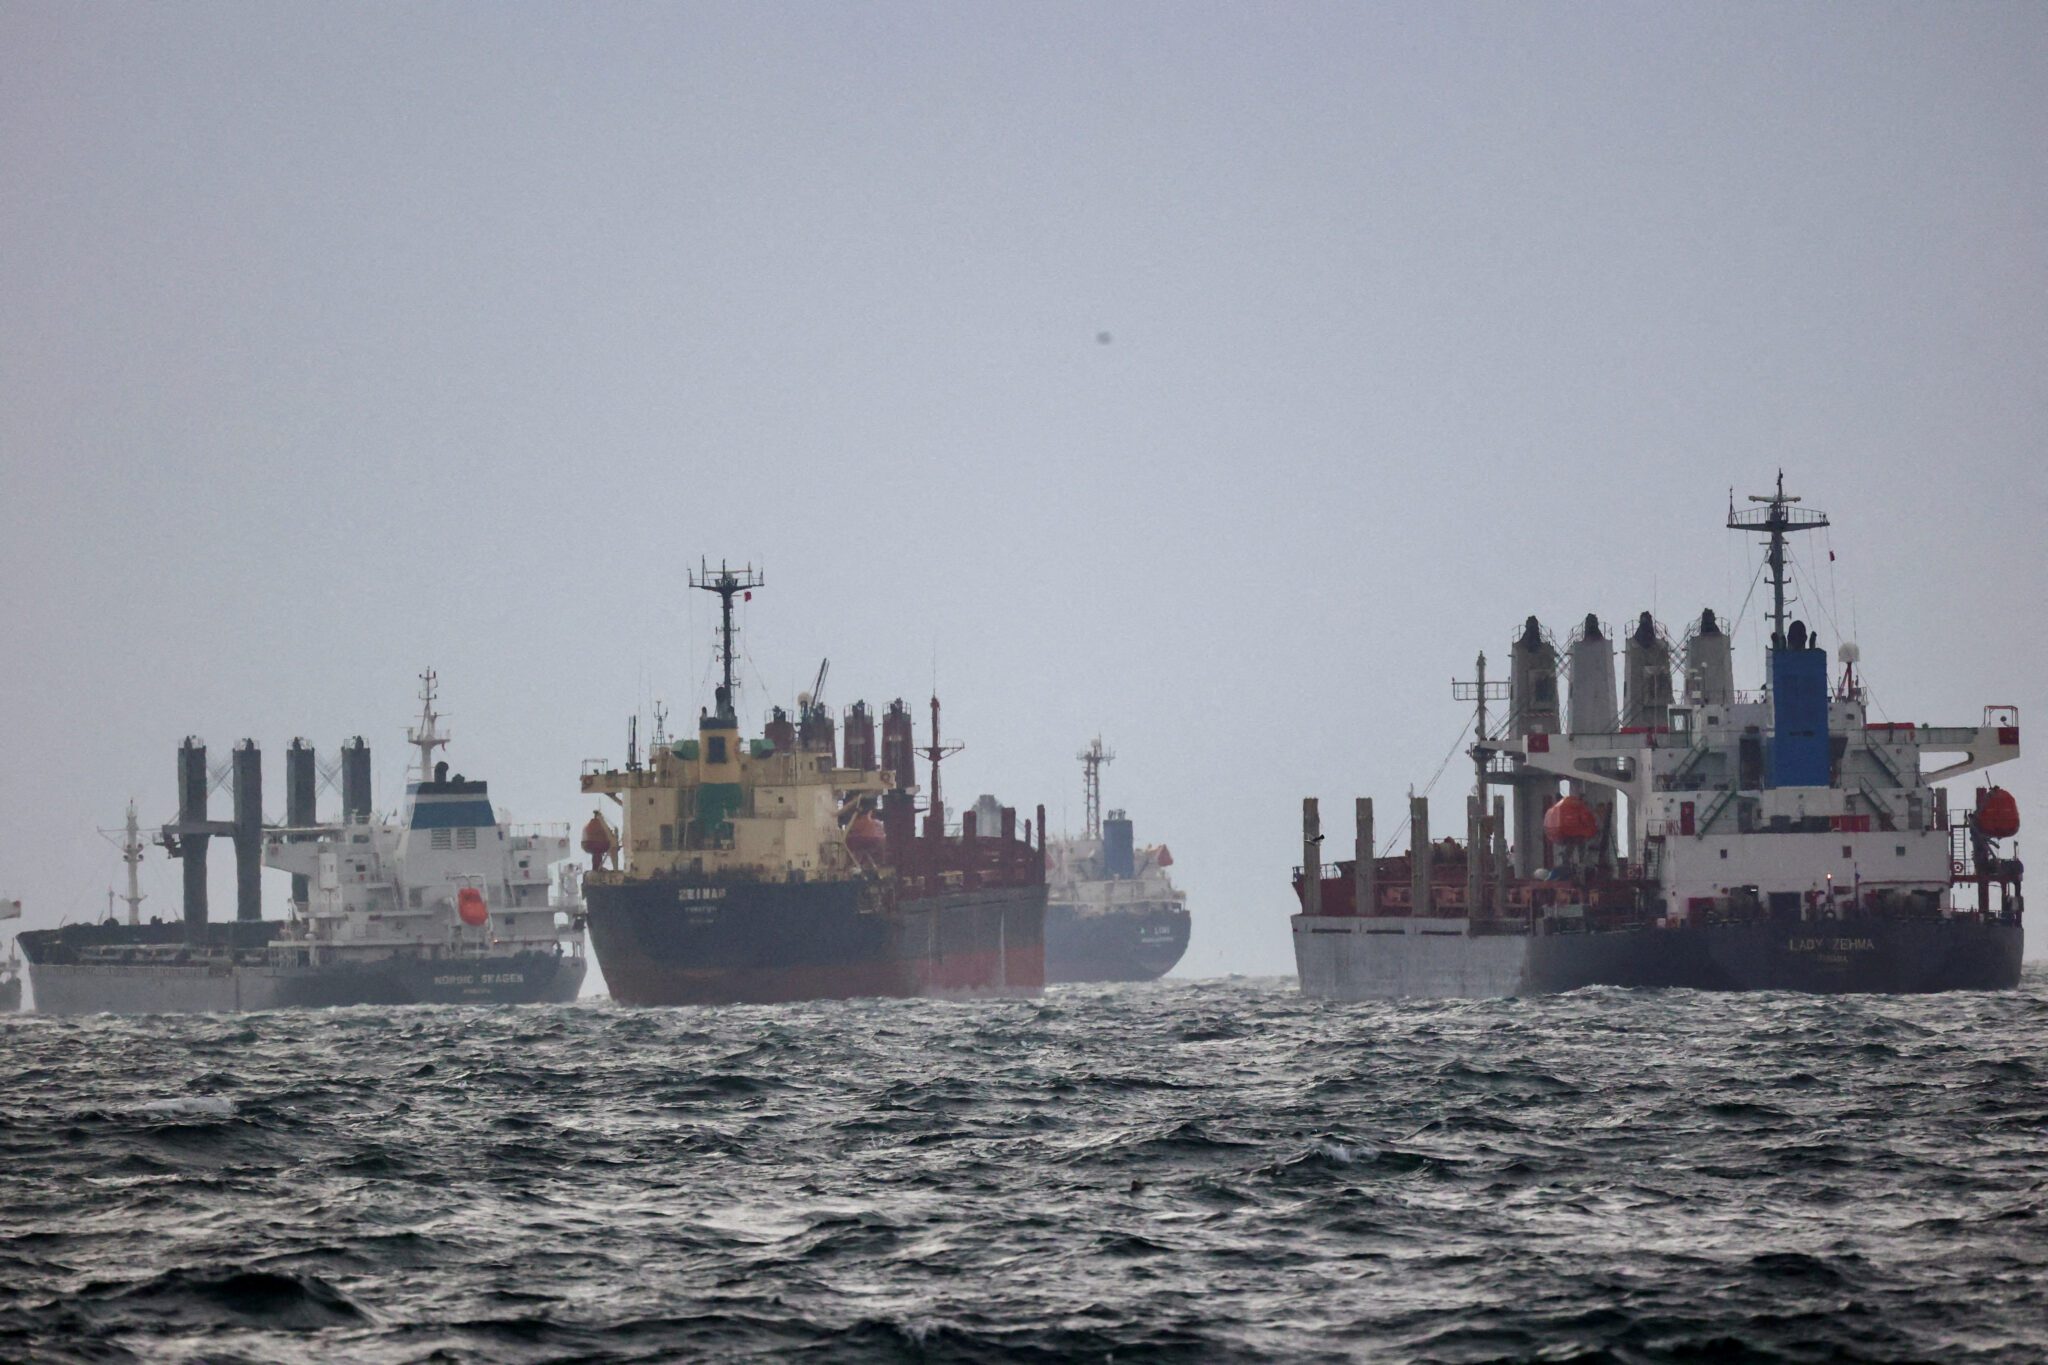  Les navires sont vus alors qu'ils attendent d'être inspectés dans le cadre de la Black Sea Grain Initiative, négociée par les Nations Unies et la Turquie, dans le mouillage sud du Bosphore à Istanbul, Turquie le 11 décembre 2022.